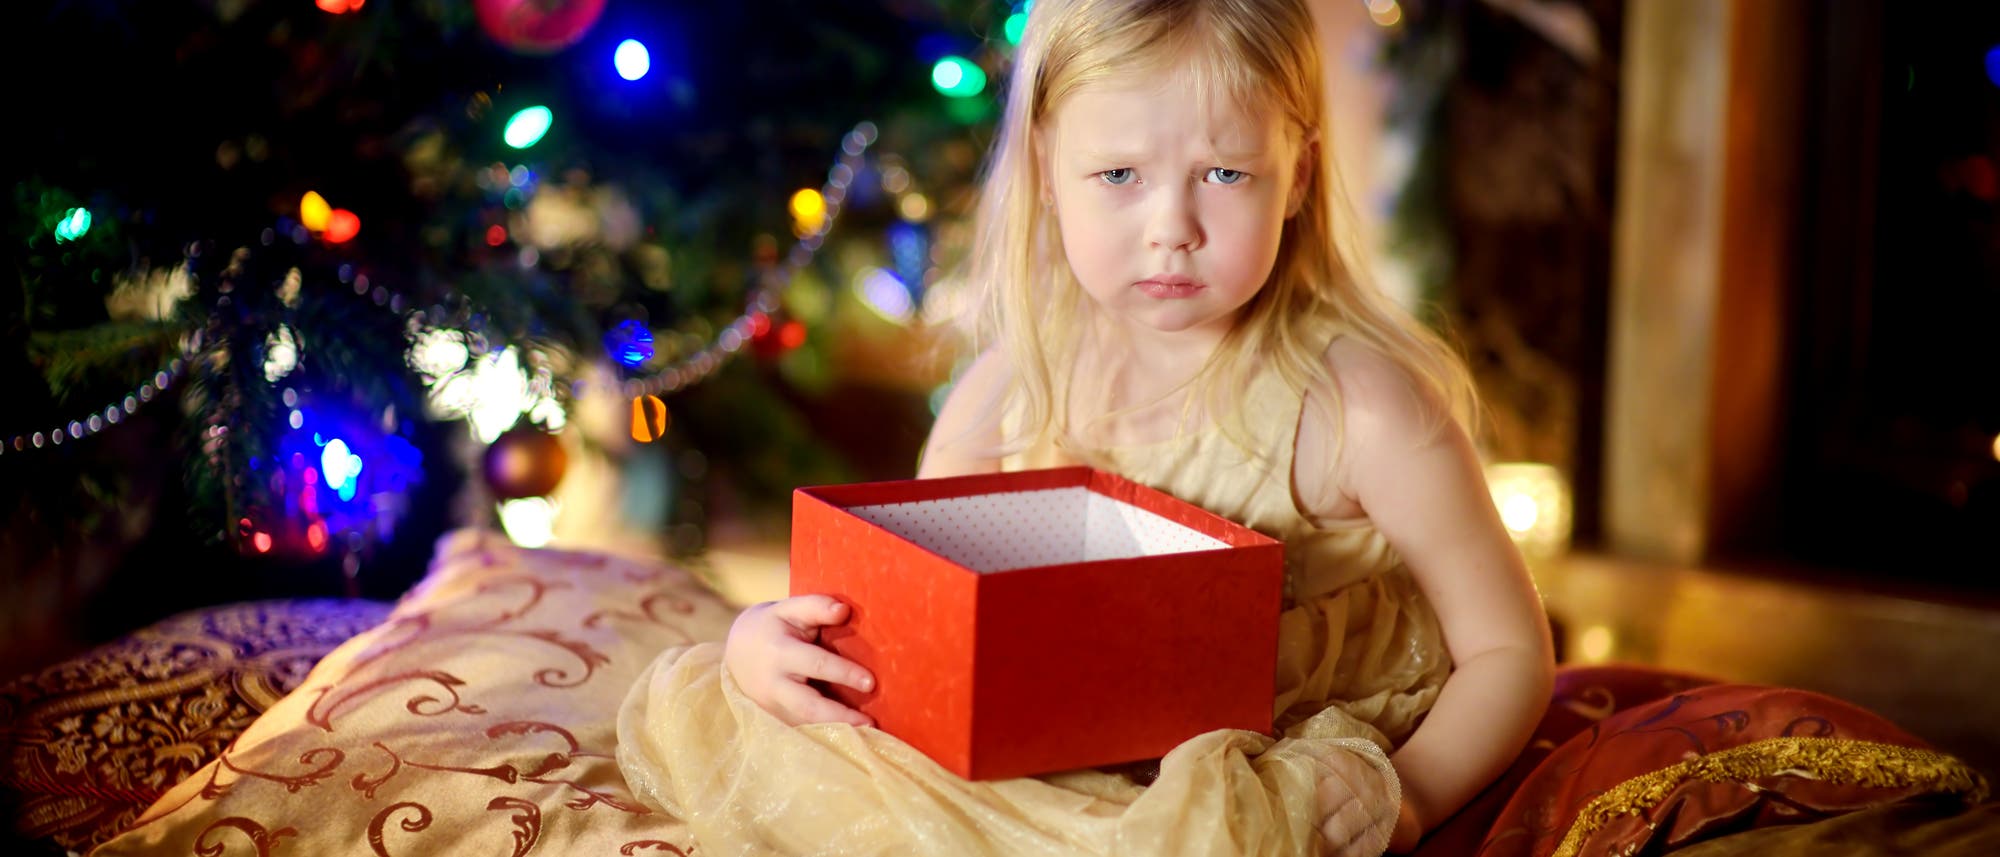 Ein kleines Mädchen ist unglücklich mit seinem Weihnachtsgeschenk